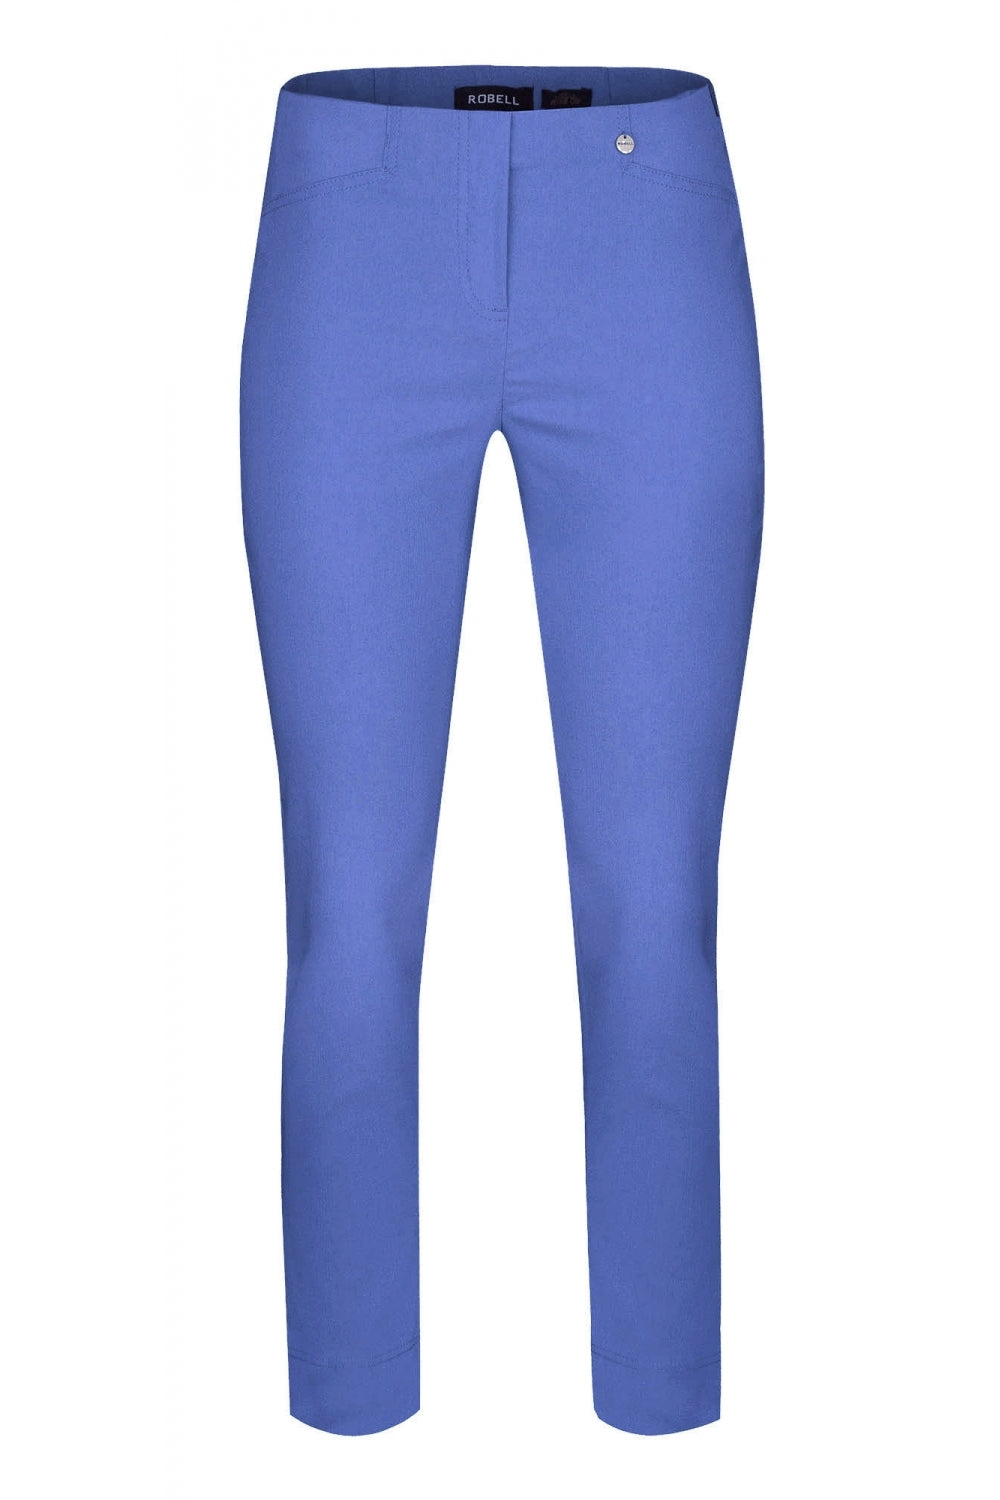 Robell 51527 Rose 09 Slim Leg Trouser Azure Blue (600) Front | Dotique